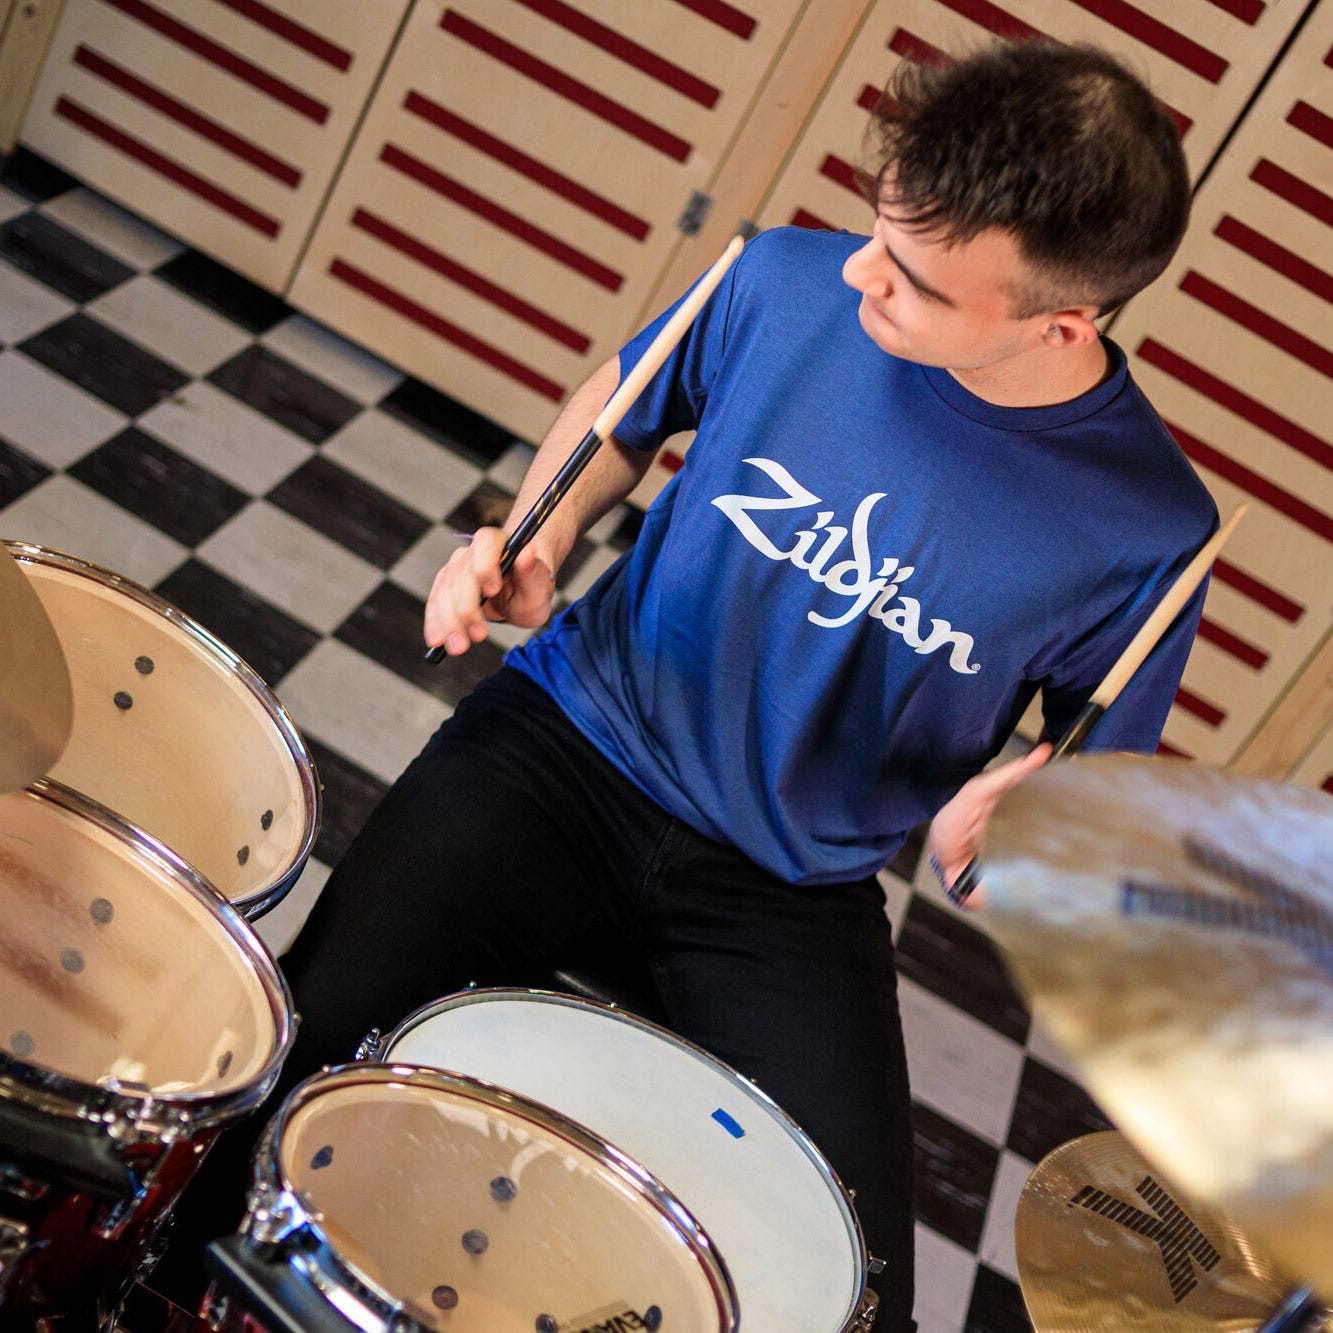 Slate Zildjian Lifestyle drumming pose